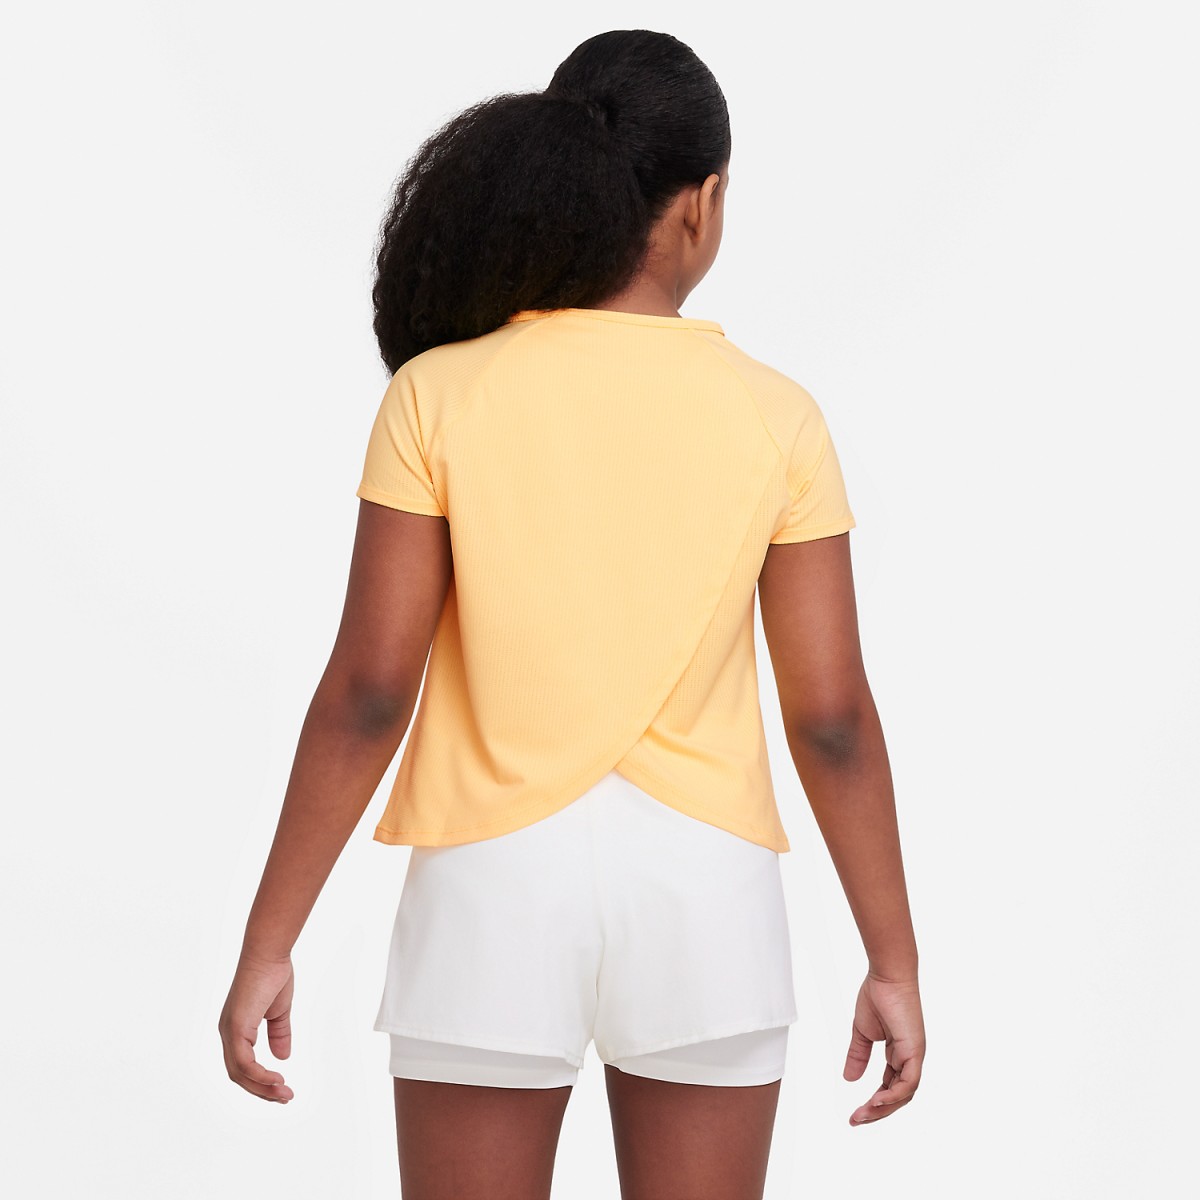 Тенісна футболка дитяча Nike Victory Top G citron pulse/citron pulse/white